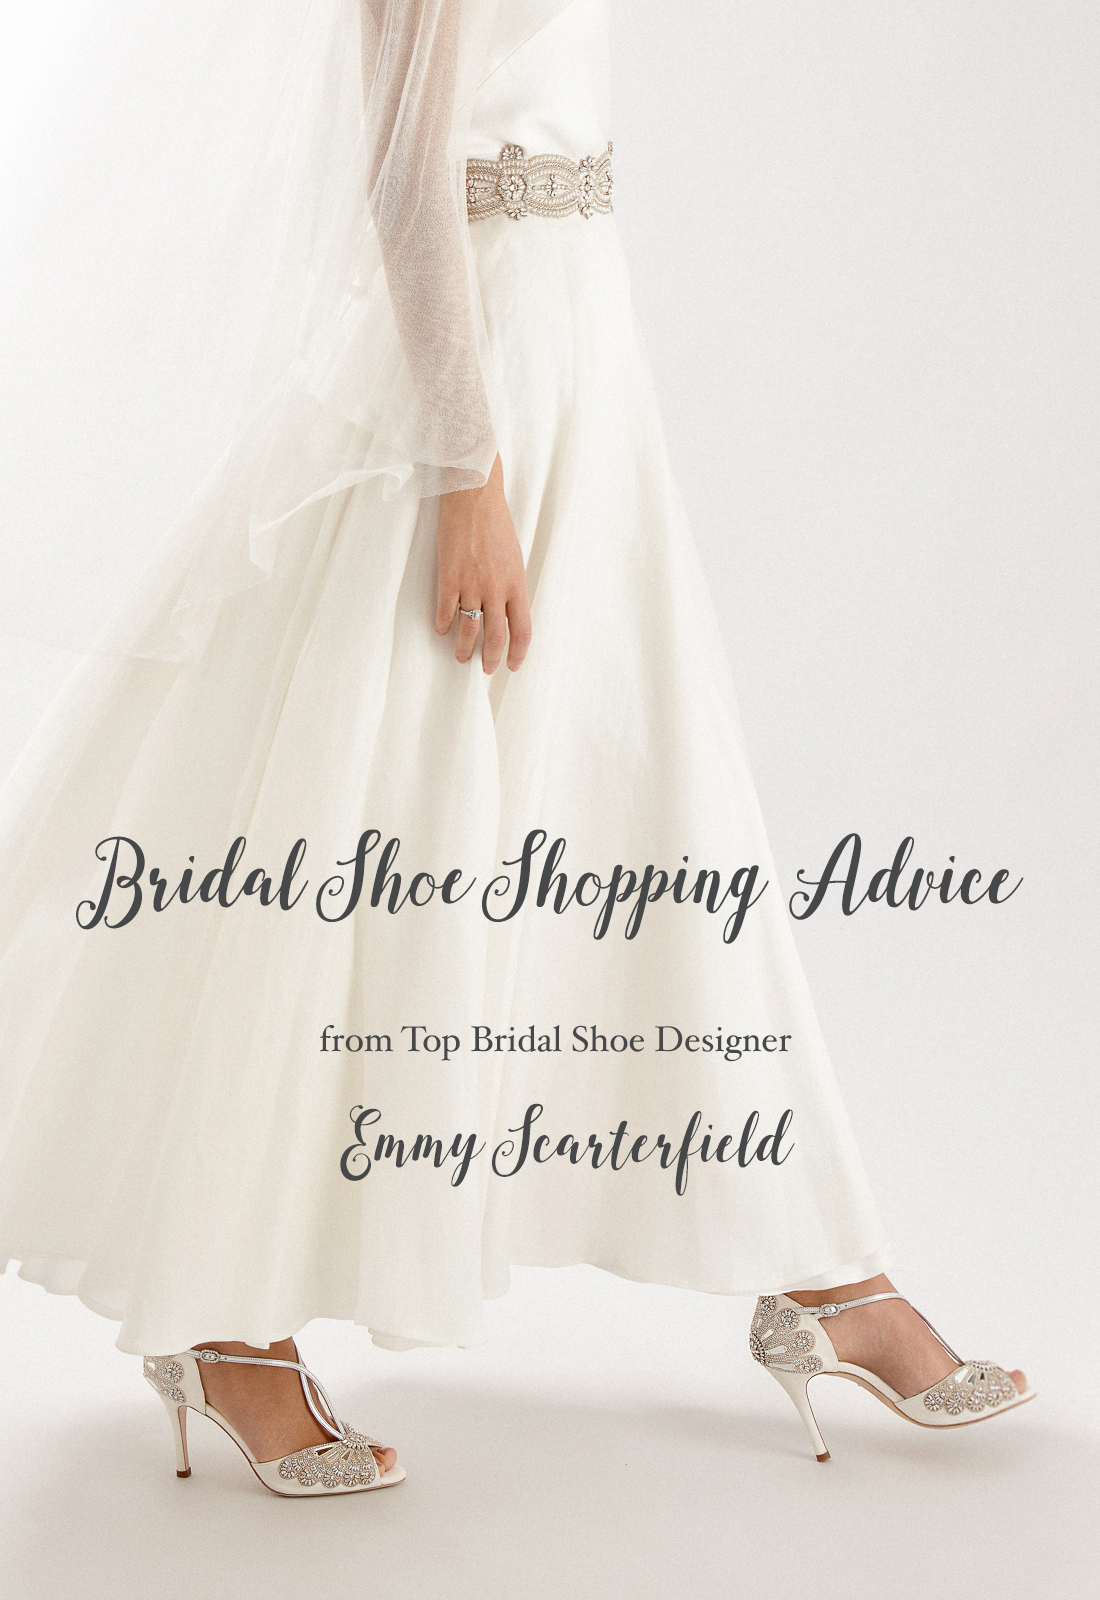 Bridal Shoe Shopping Advice